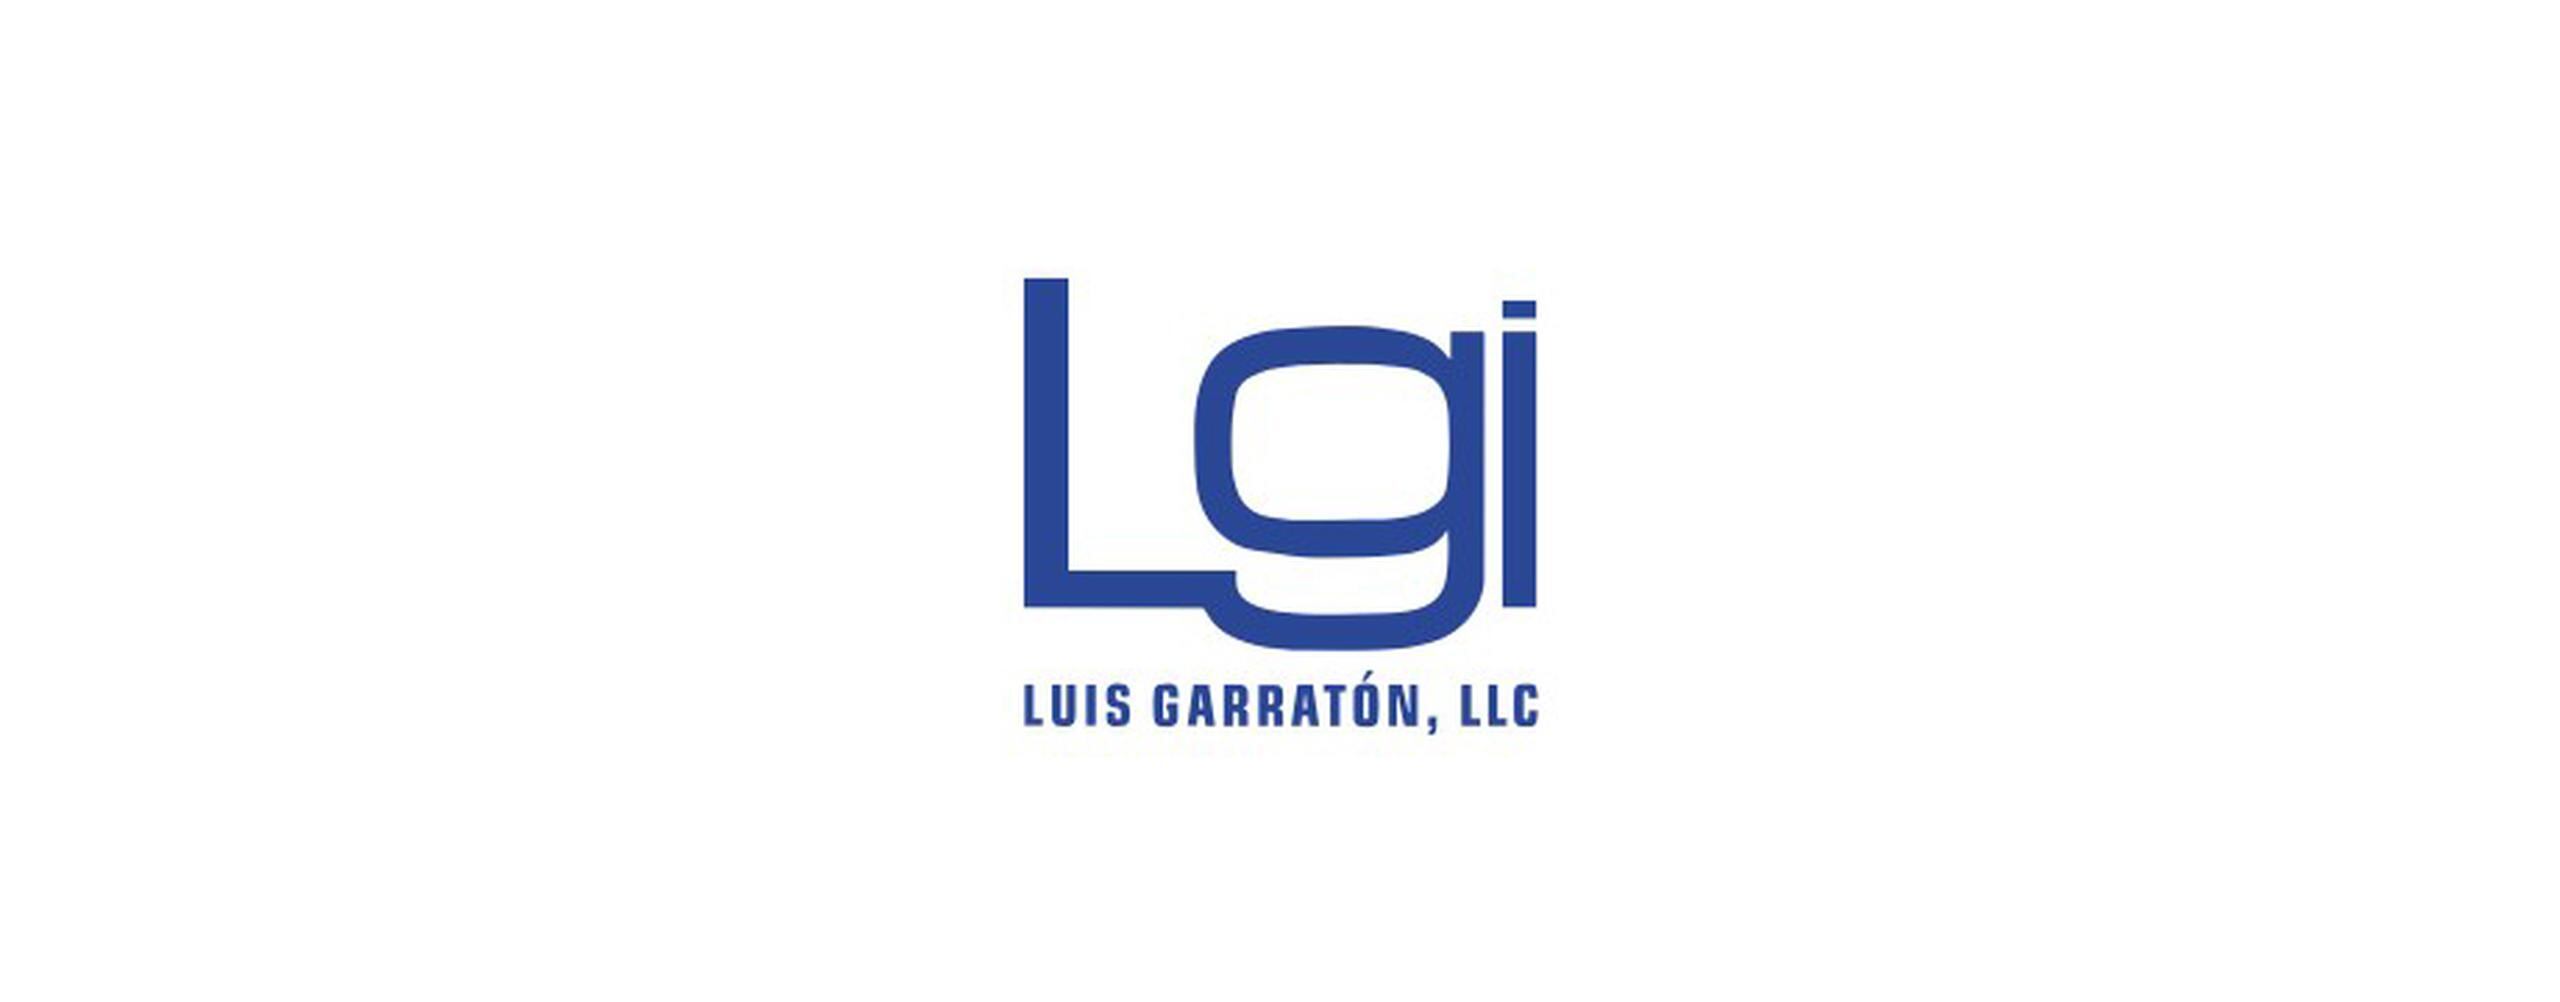 Luis Garratón, LLC es la empresa premiada como Afiliada del Año por MIDA.